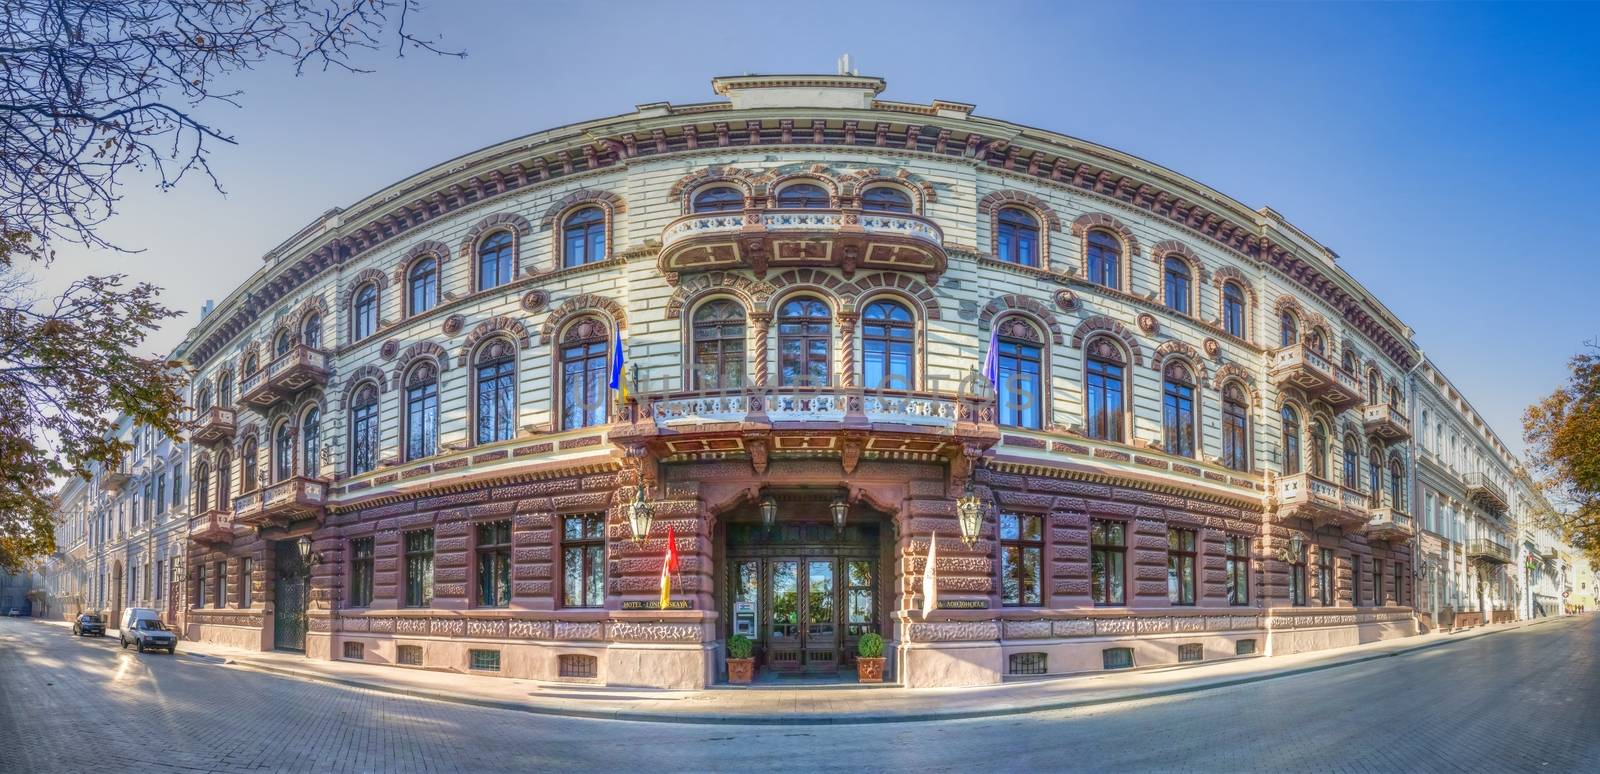 Londonskaya hotel in Odessa Ukraine by Multipedia